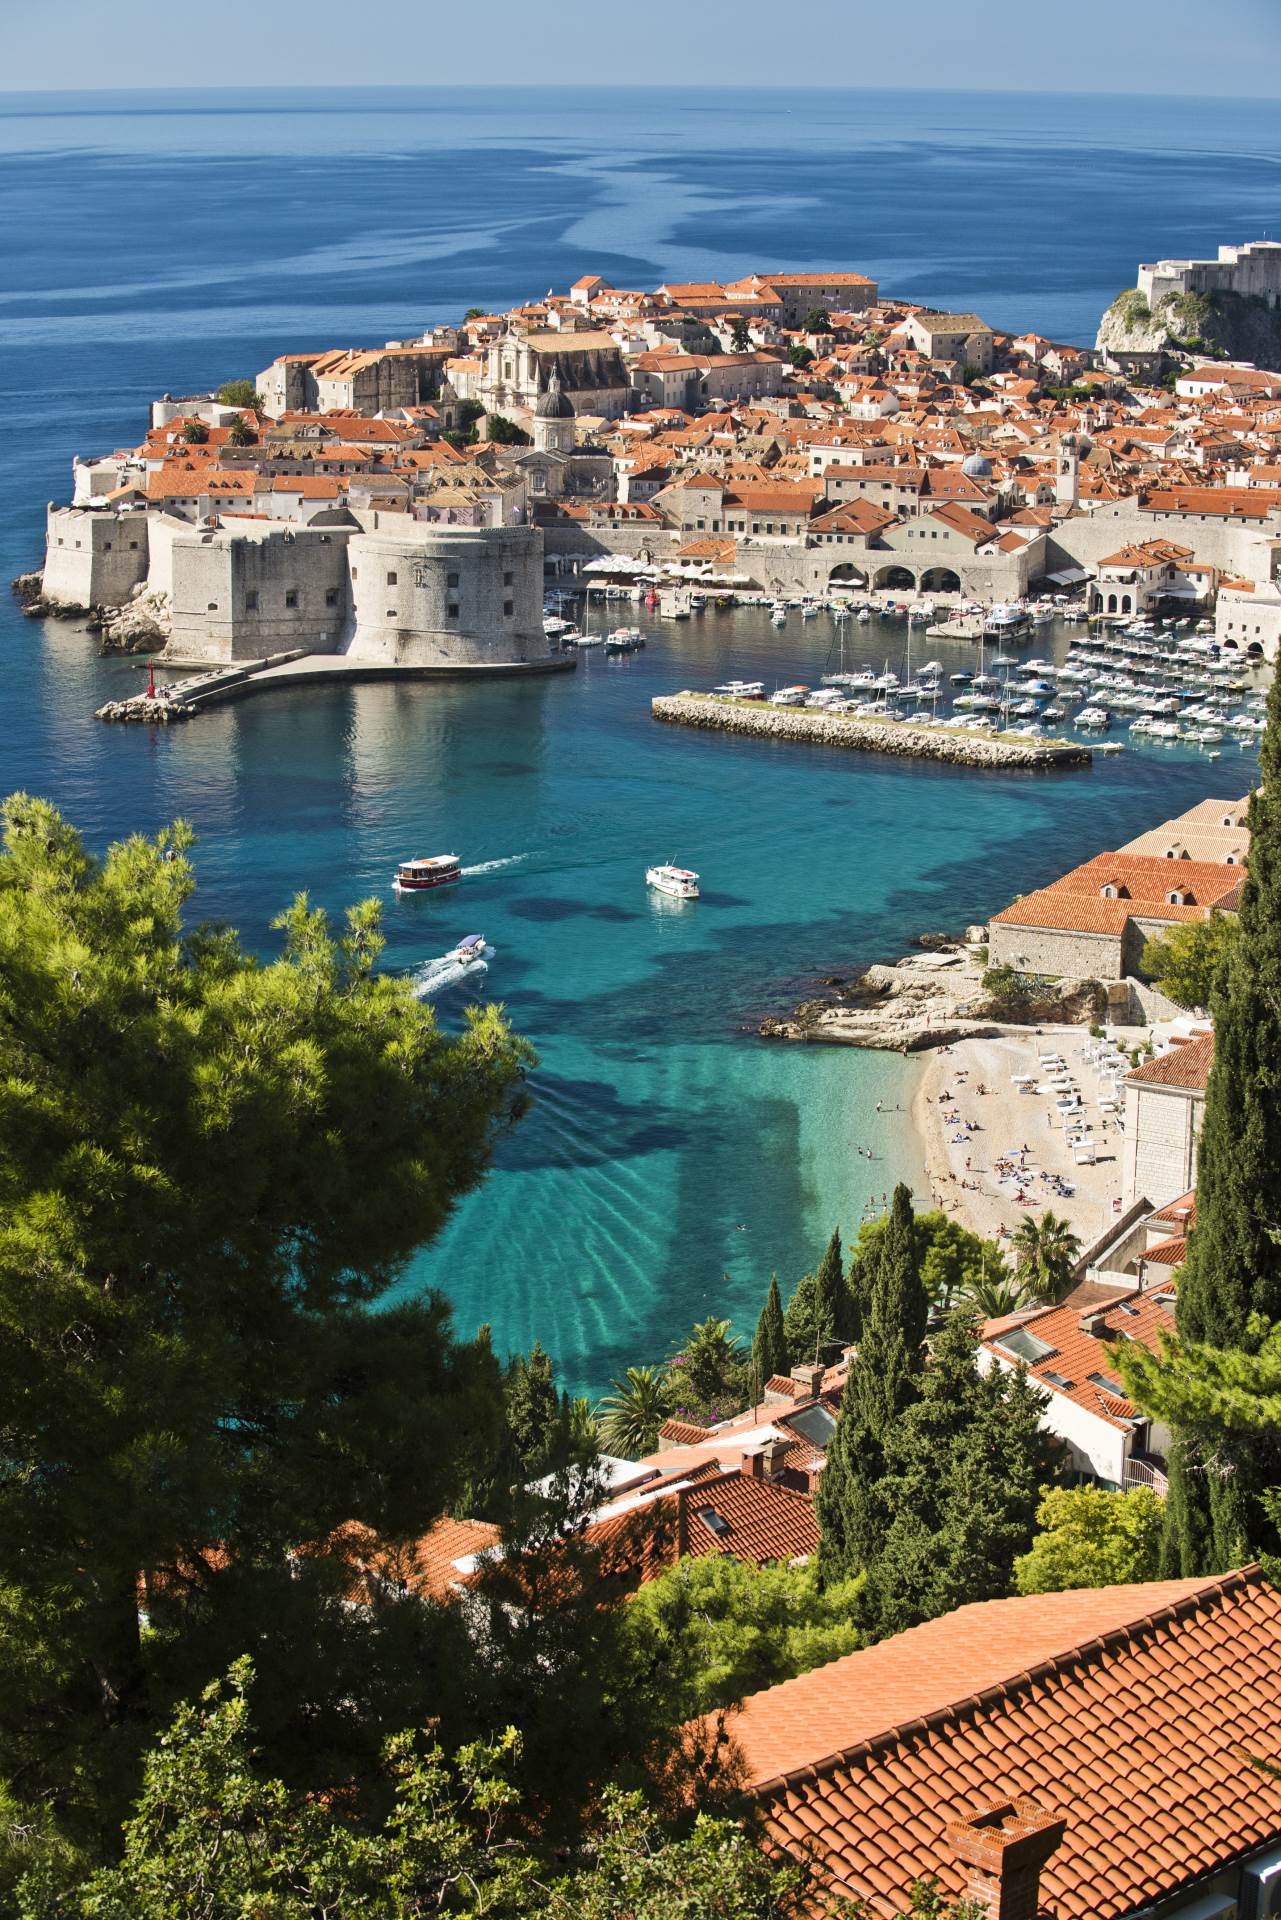 Qatar Airways uvodi sezonske letove u Dubrovnik u svibnju 2020. godine